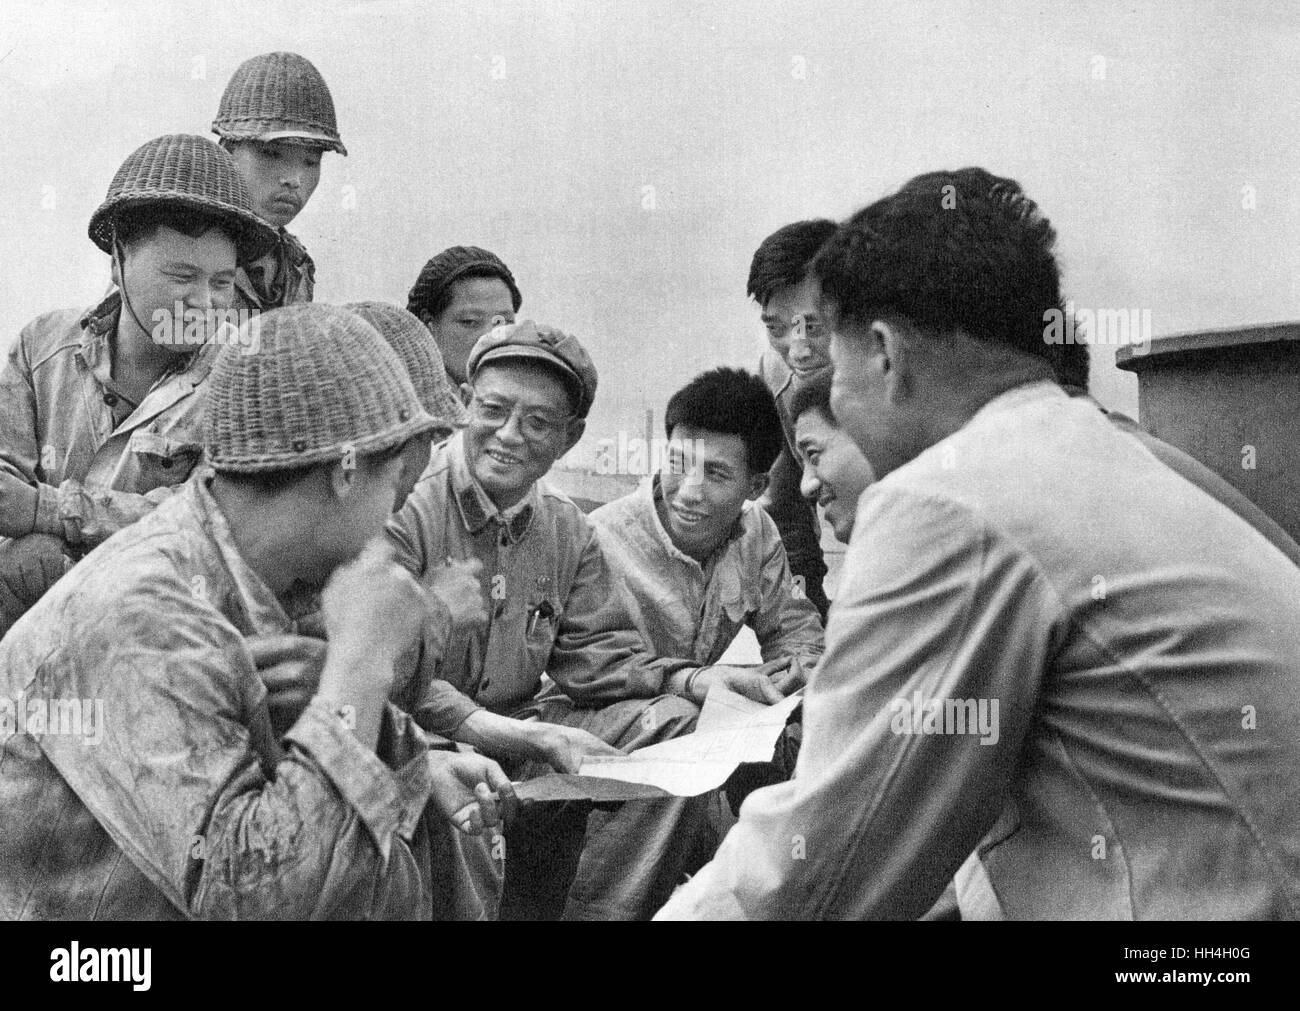 La China comunista - astillero obreros y técnicos con plan, trabajando juntos para elevar el nivel de vida durante la época de la Revolución Cultural. Foto de stock